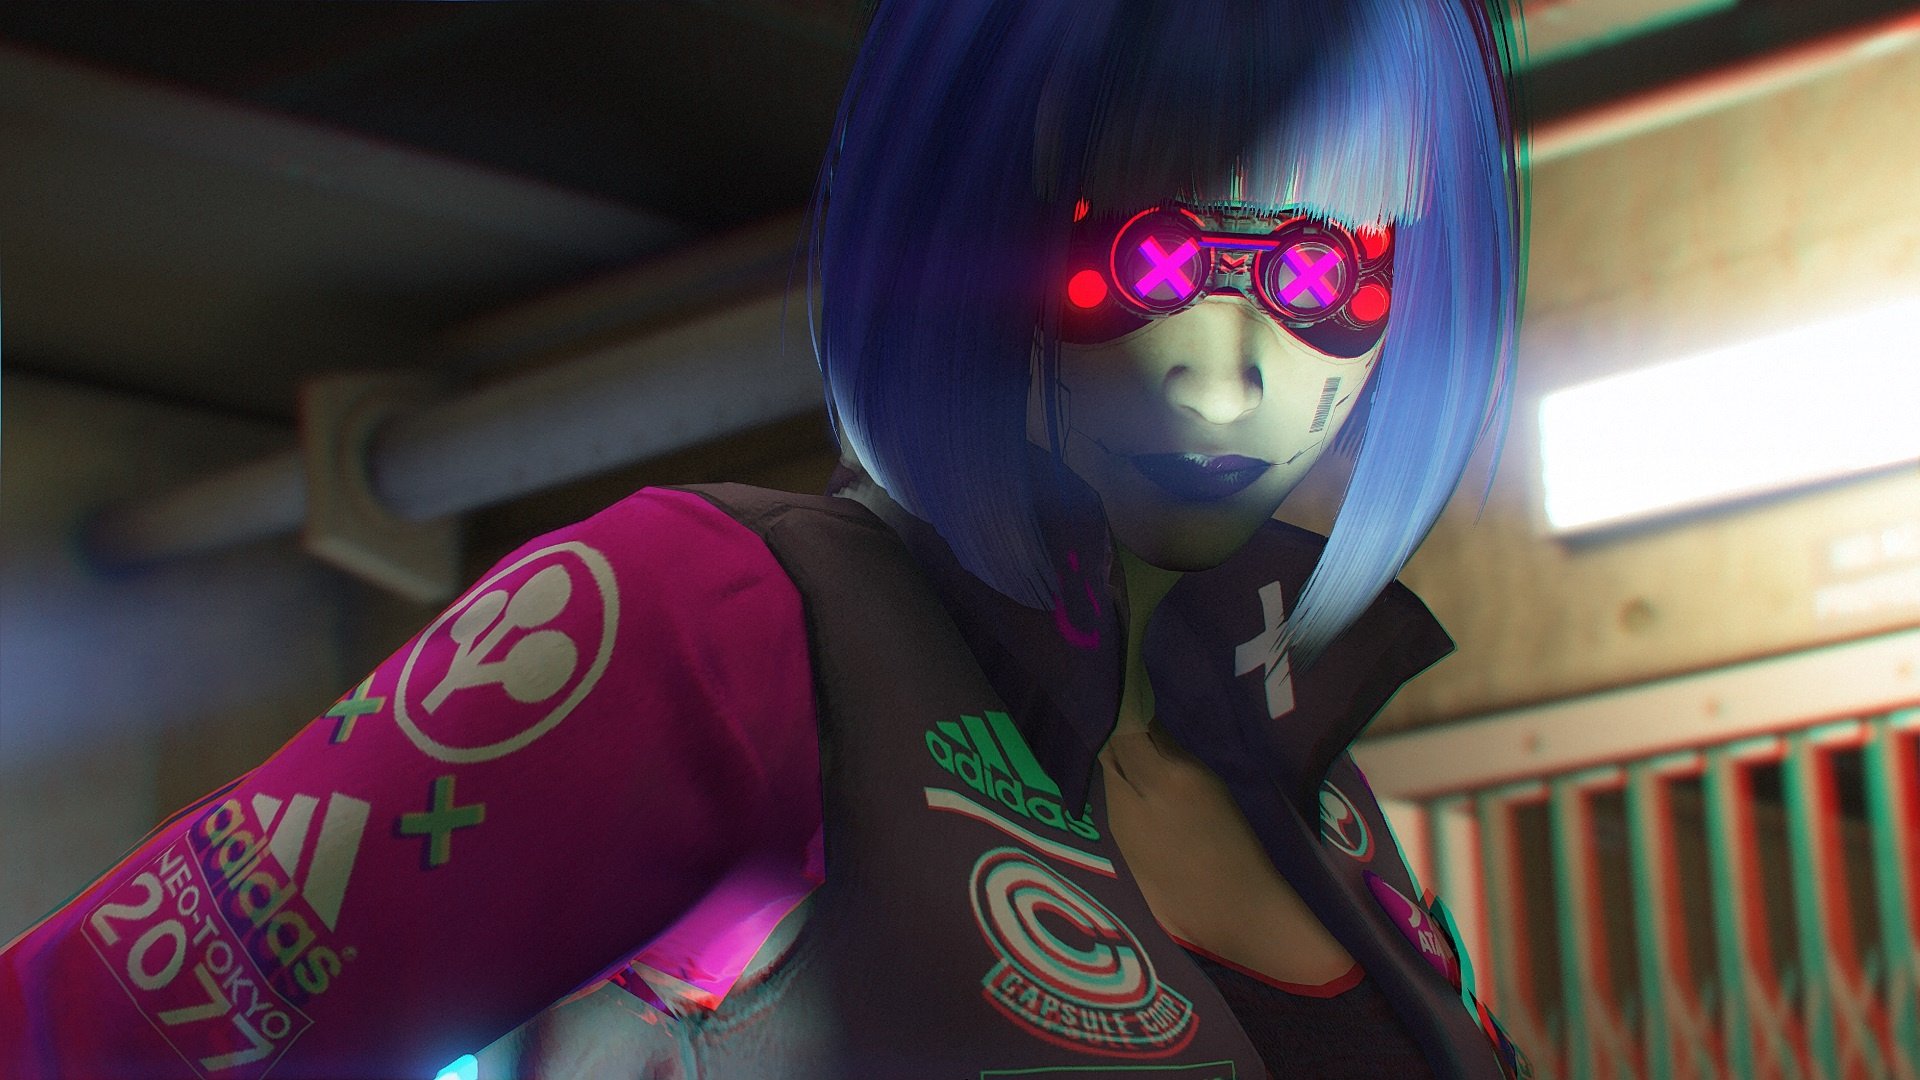 V - Cyberpunk 2077 (Female Version) [Add-On Ped] - GTA5-Mods.com